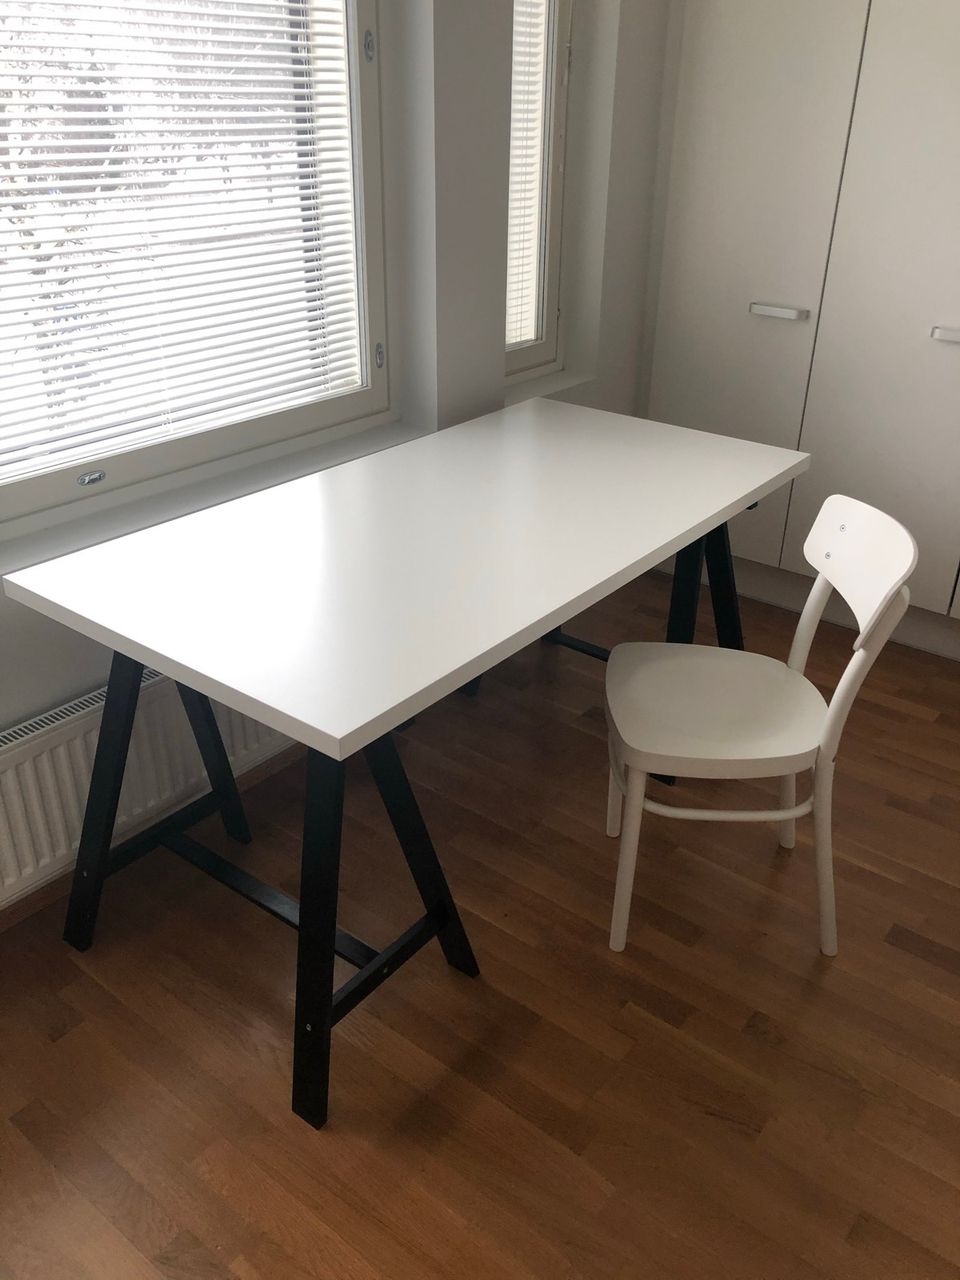 IKEA Työpöytä ja tuoli